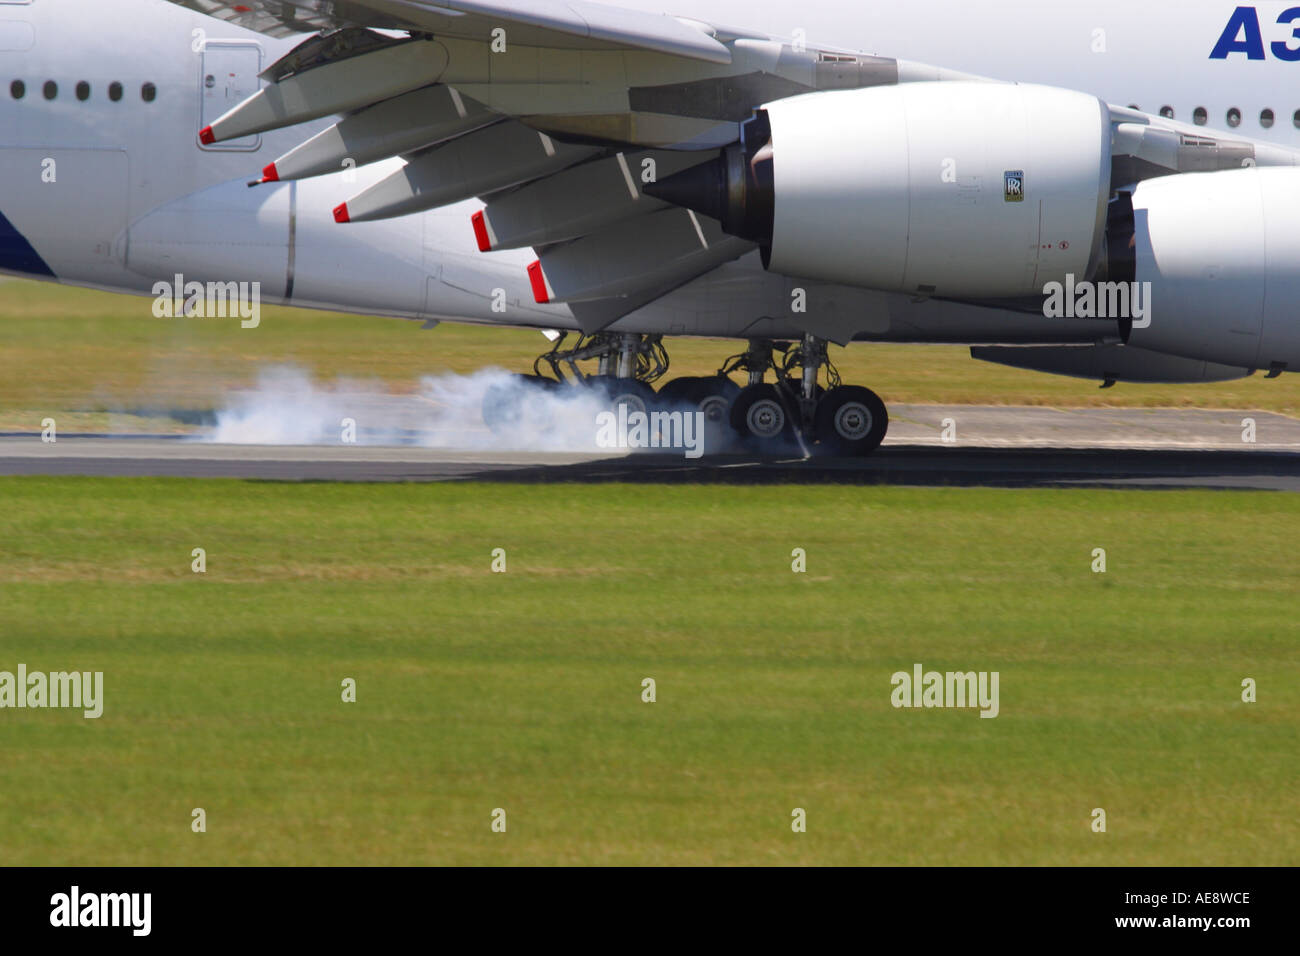 A380 Airbus A380 neue Verkehrsflugzeug Touchdown landen mit Reifen Rauch Rauchen Räder Fahrwerk Stockfoto